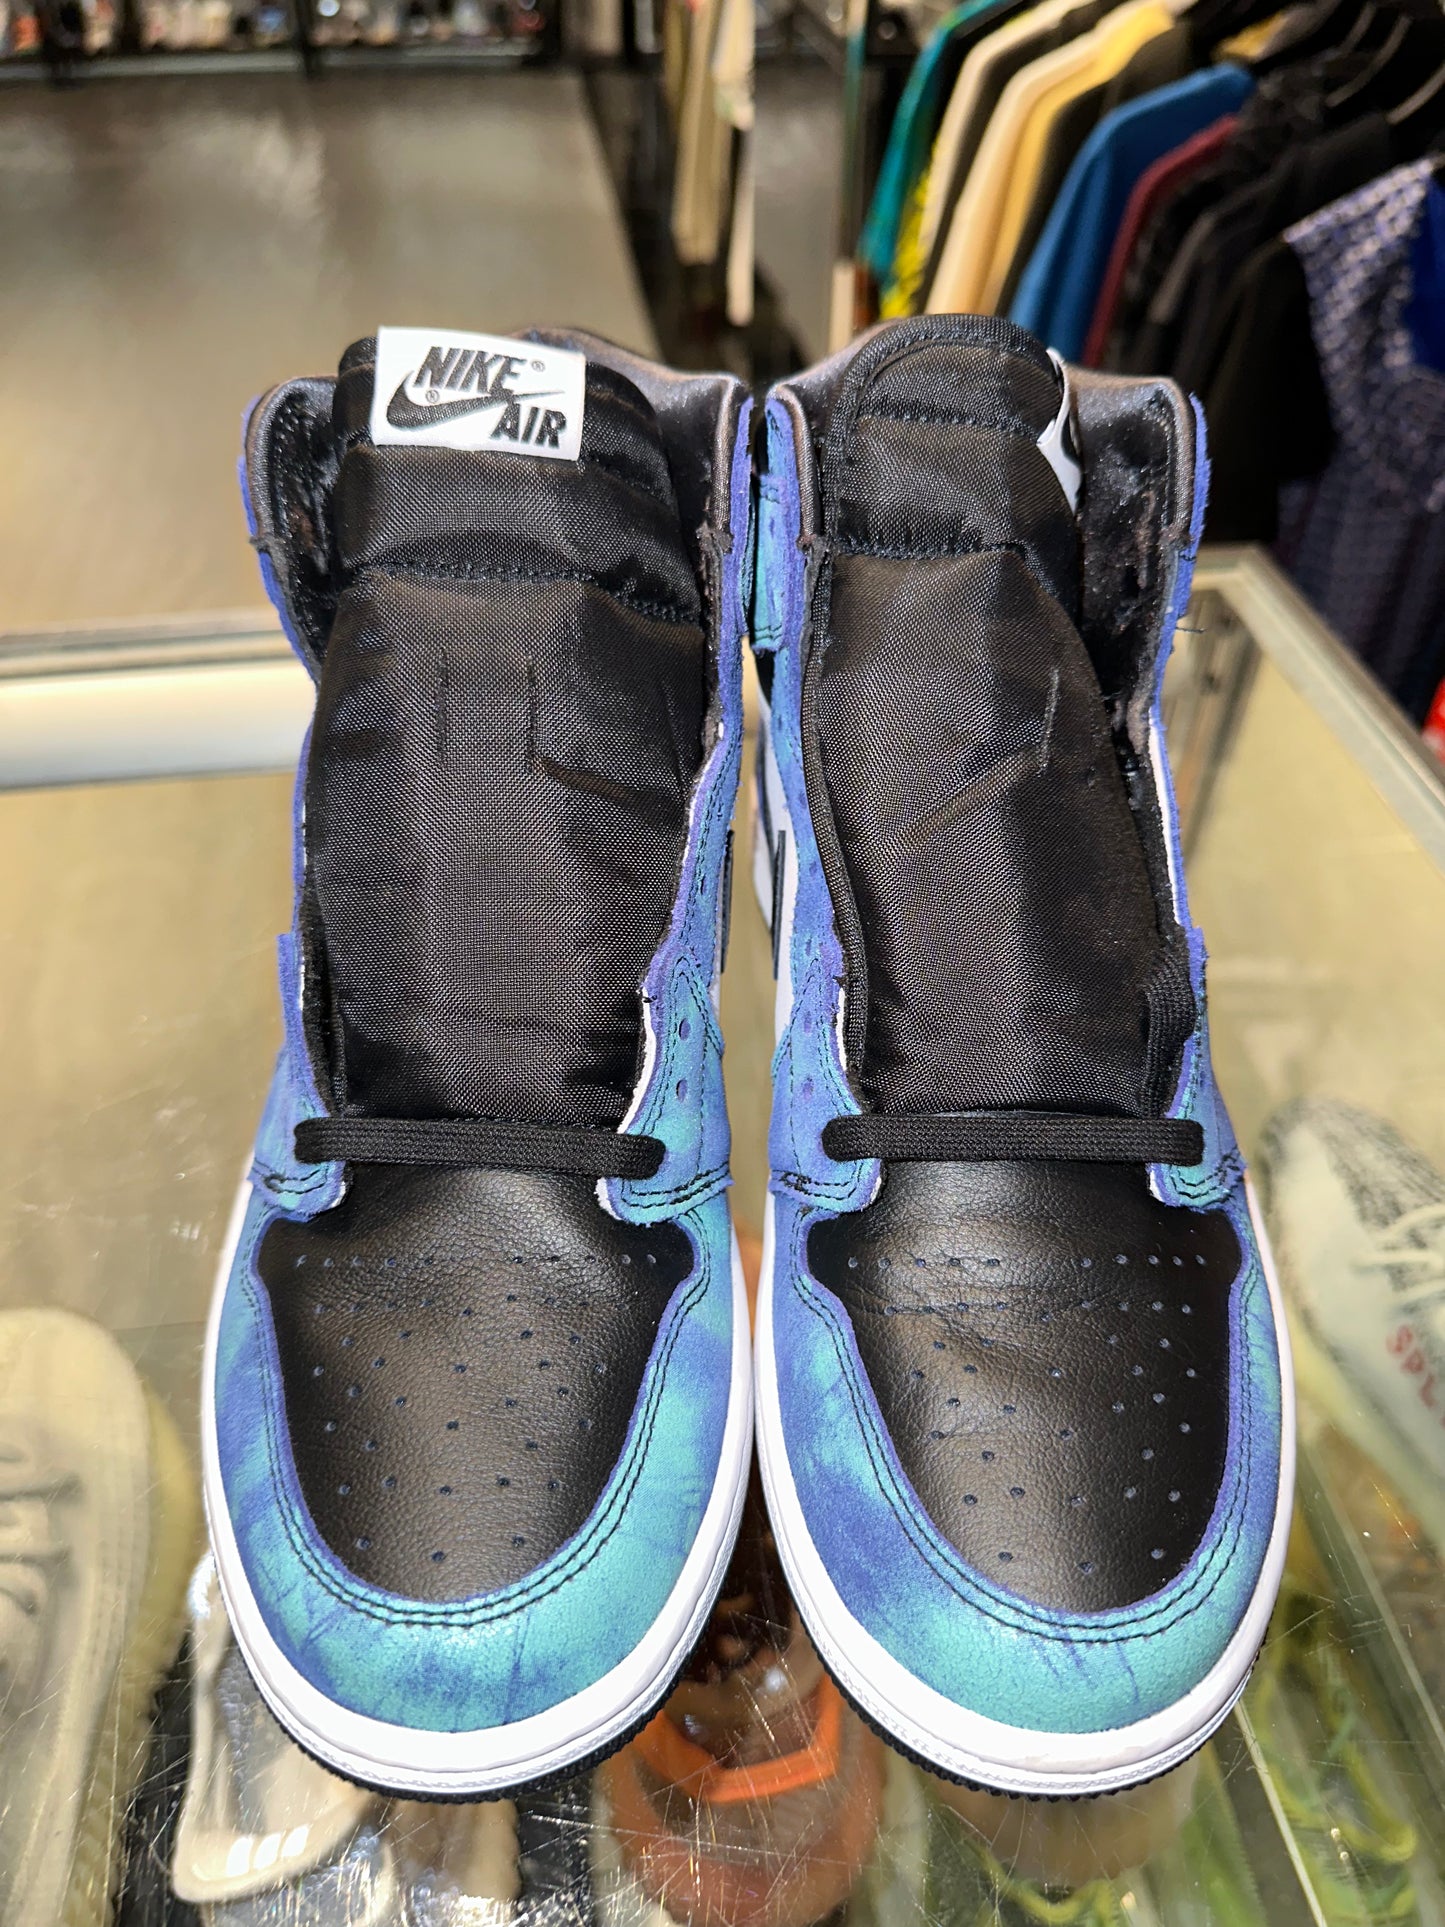 Size 7 (8.5W) Air Jordan 1 “Tie Dye” Pass as New (Mall)